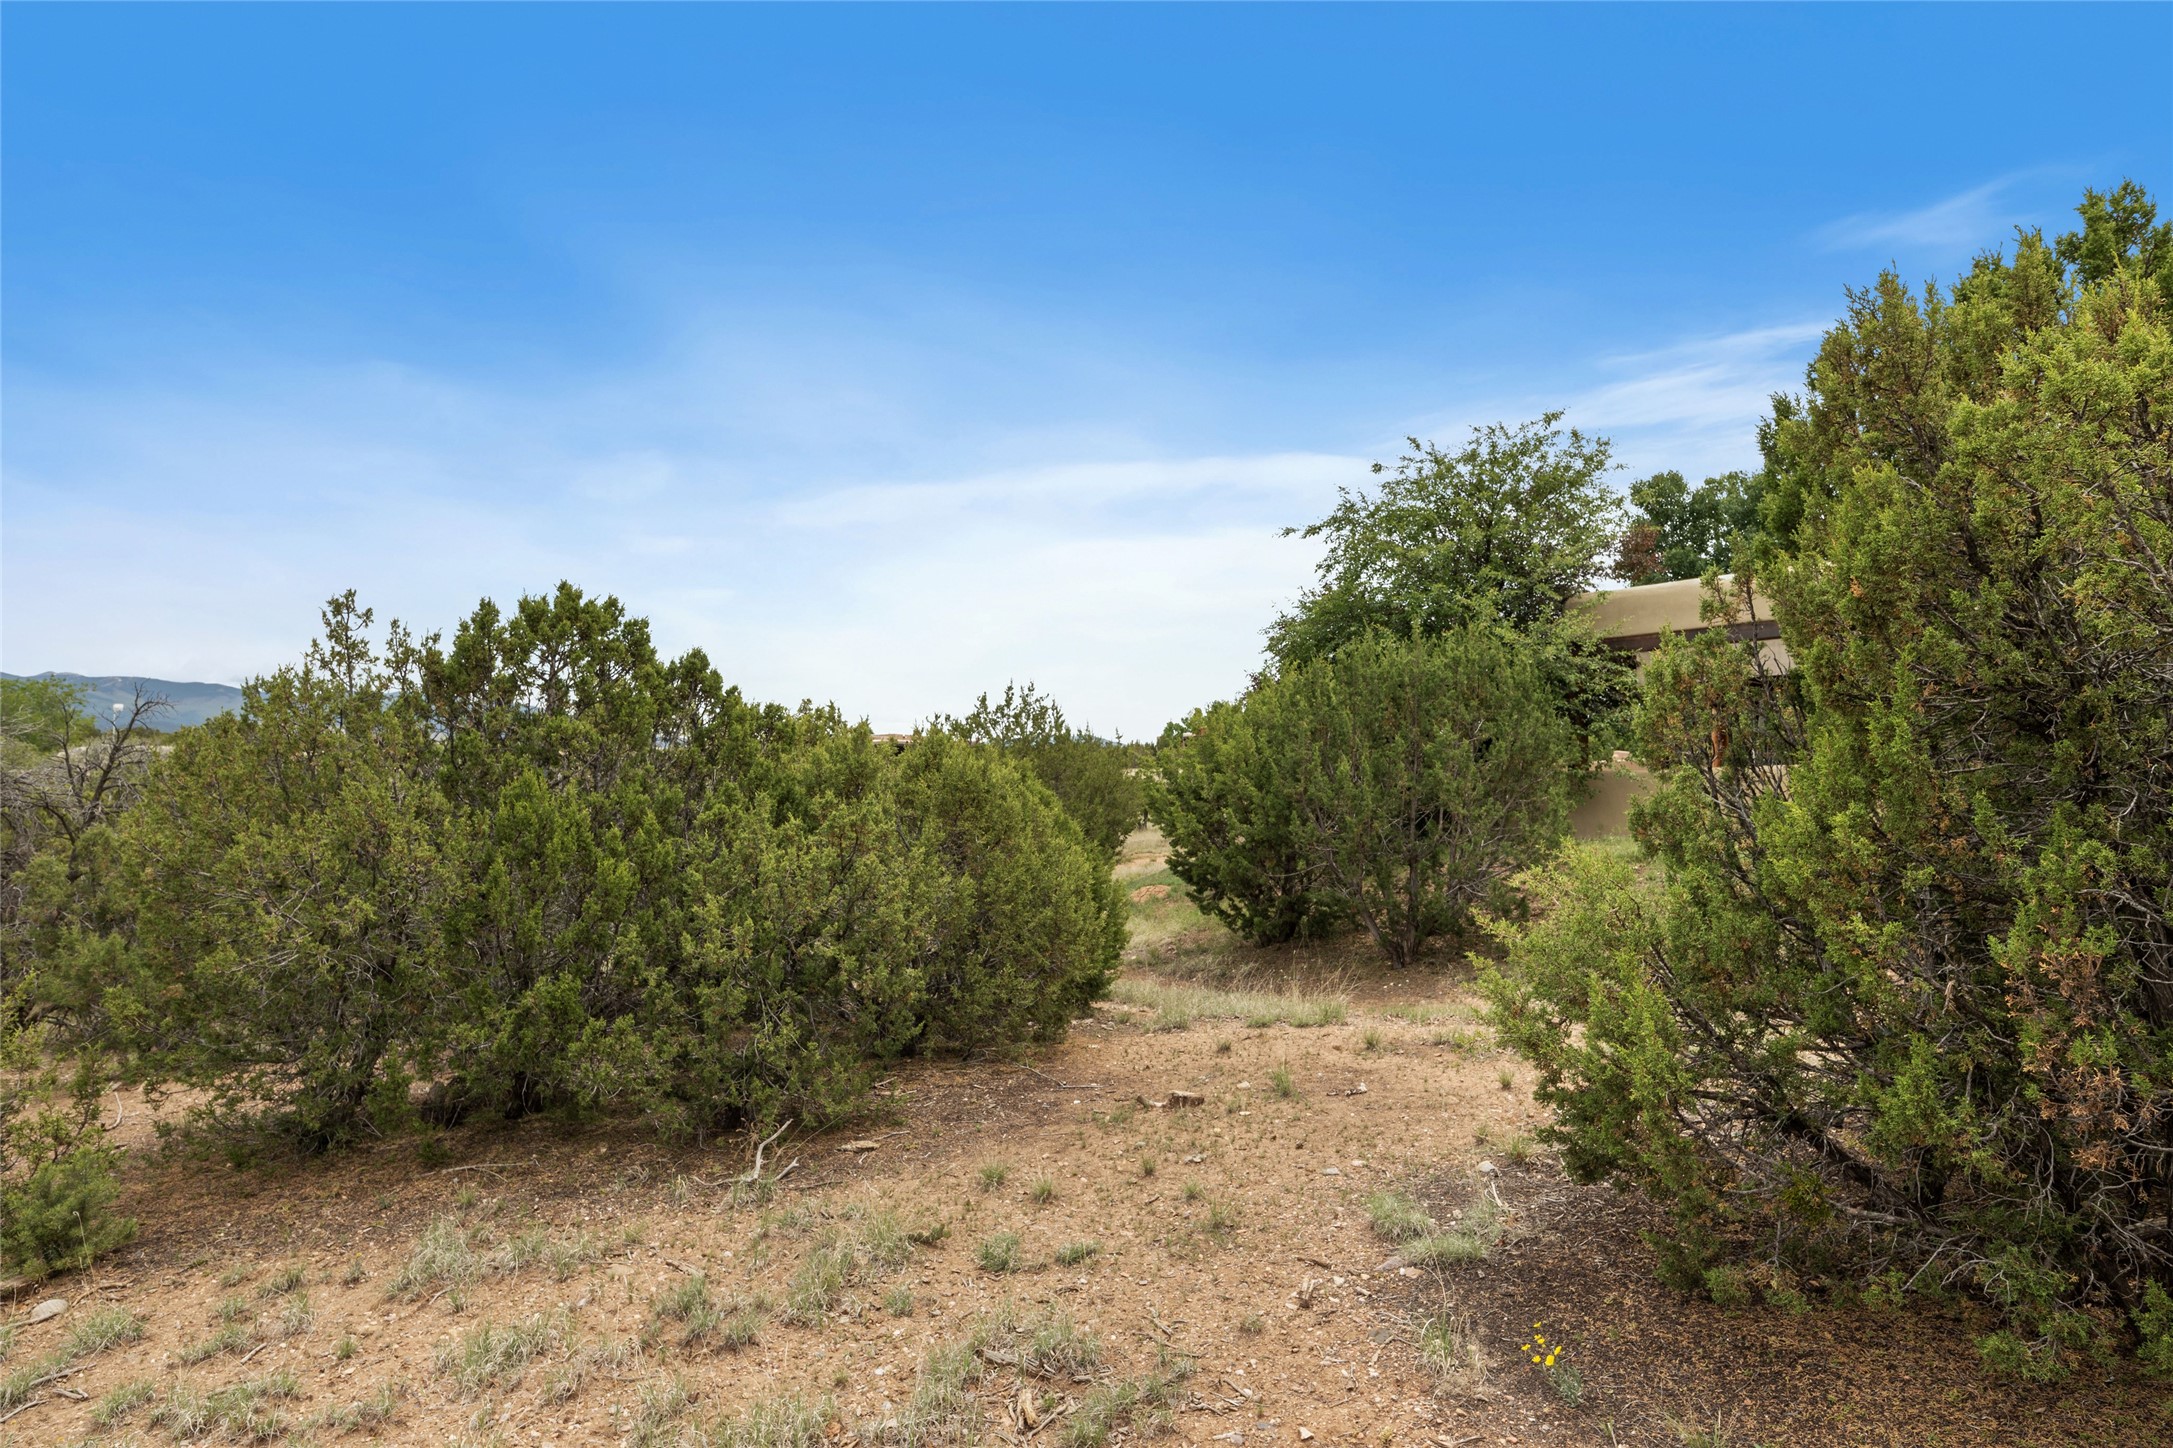 12 Plano Arbolito, Santa Fe, New Mexico 87506, ,Land,For Sale,12 Plano Arbolito,202338702